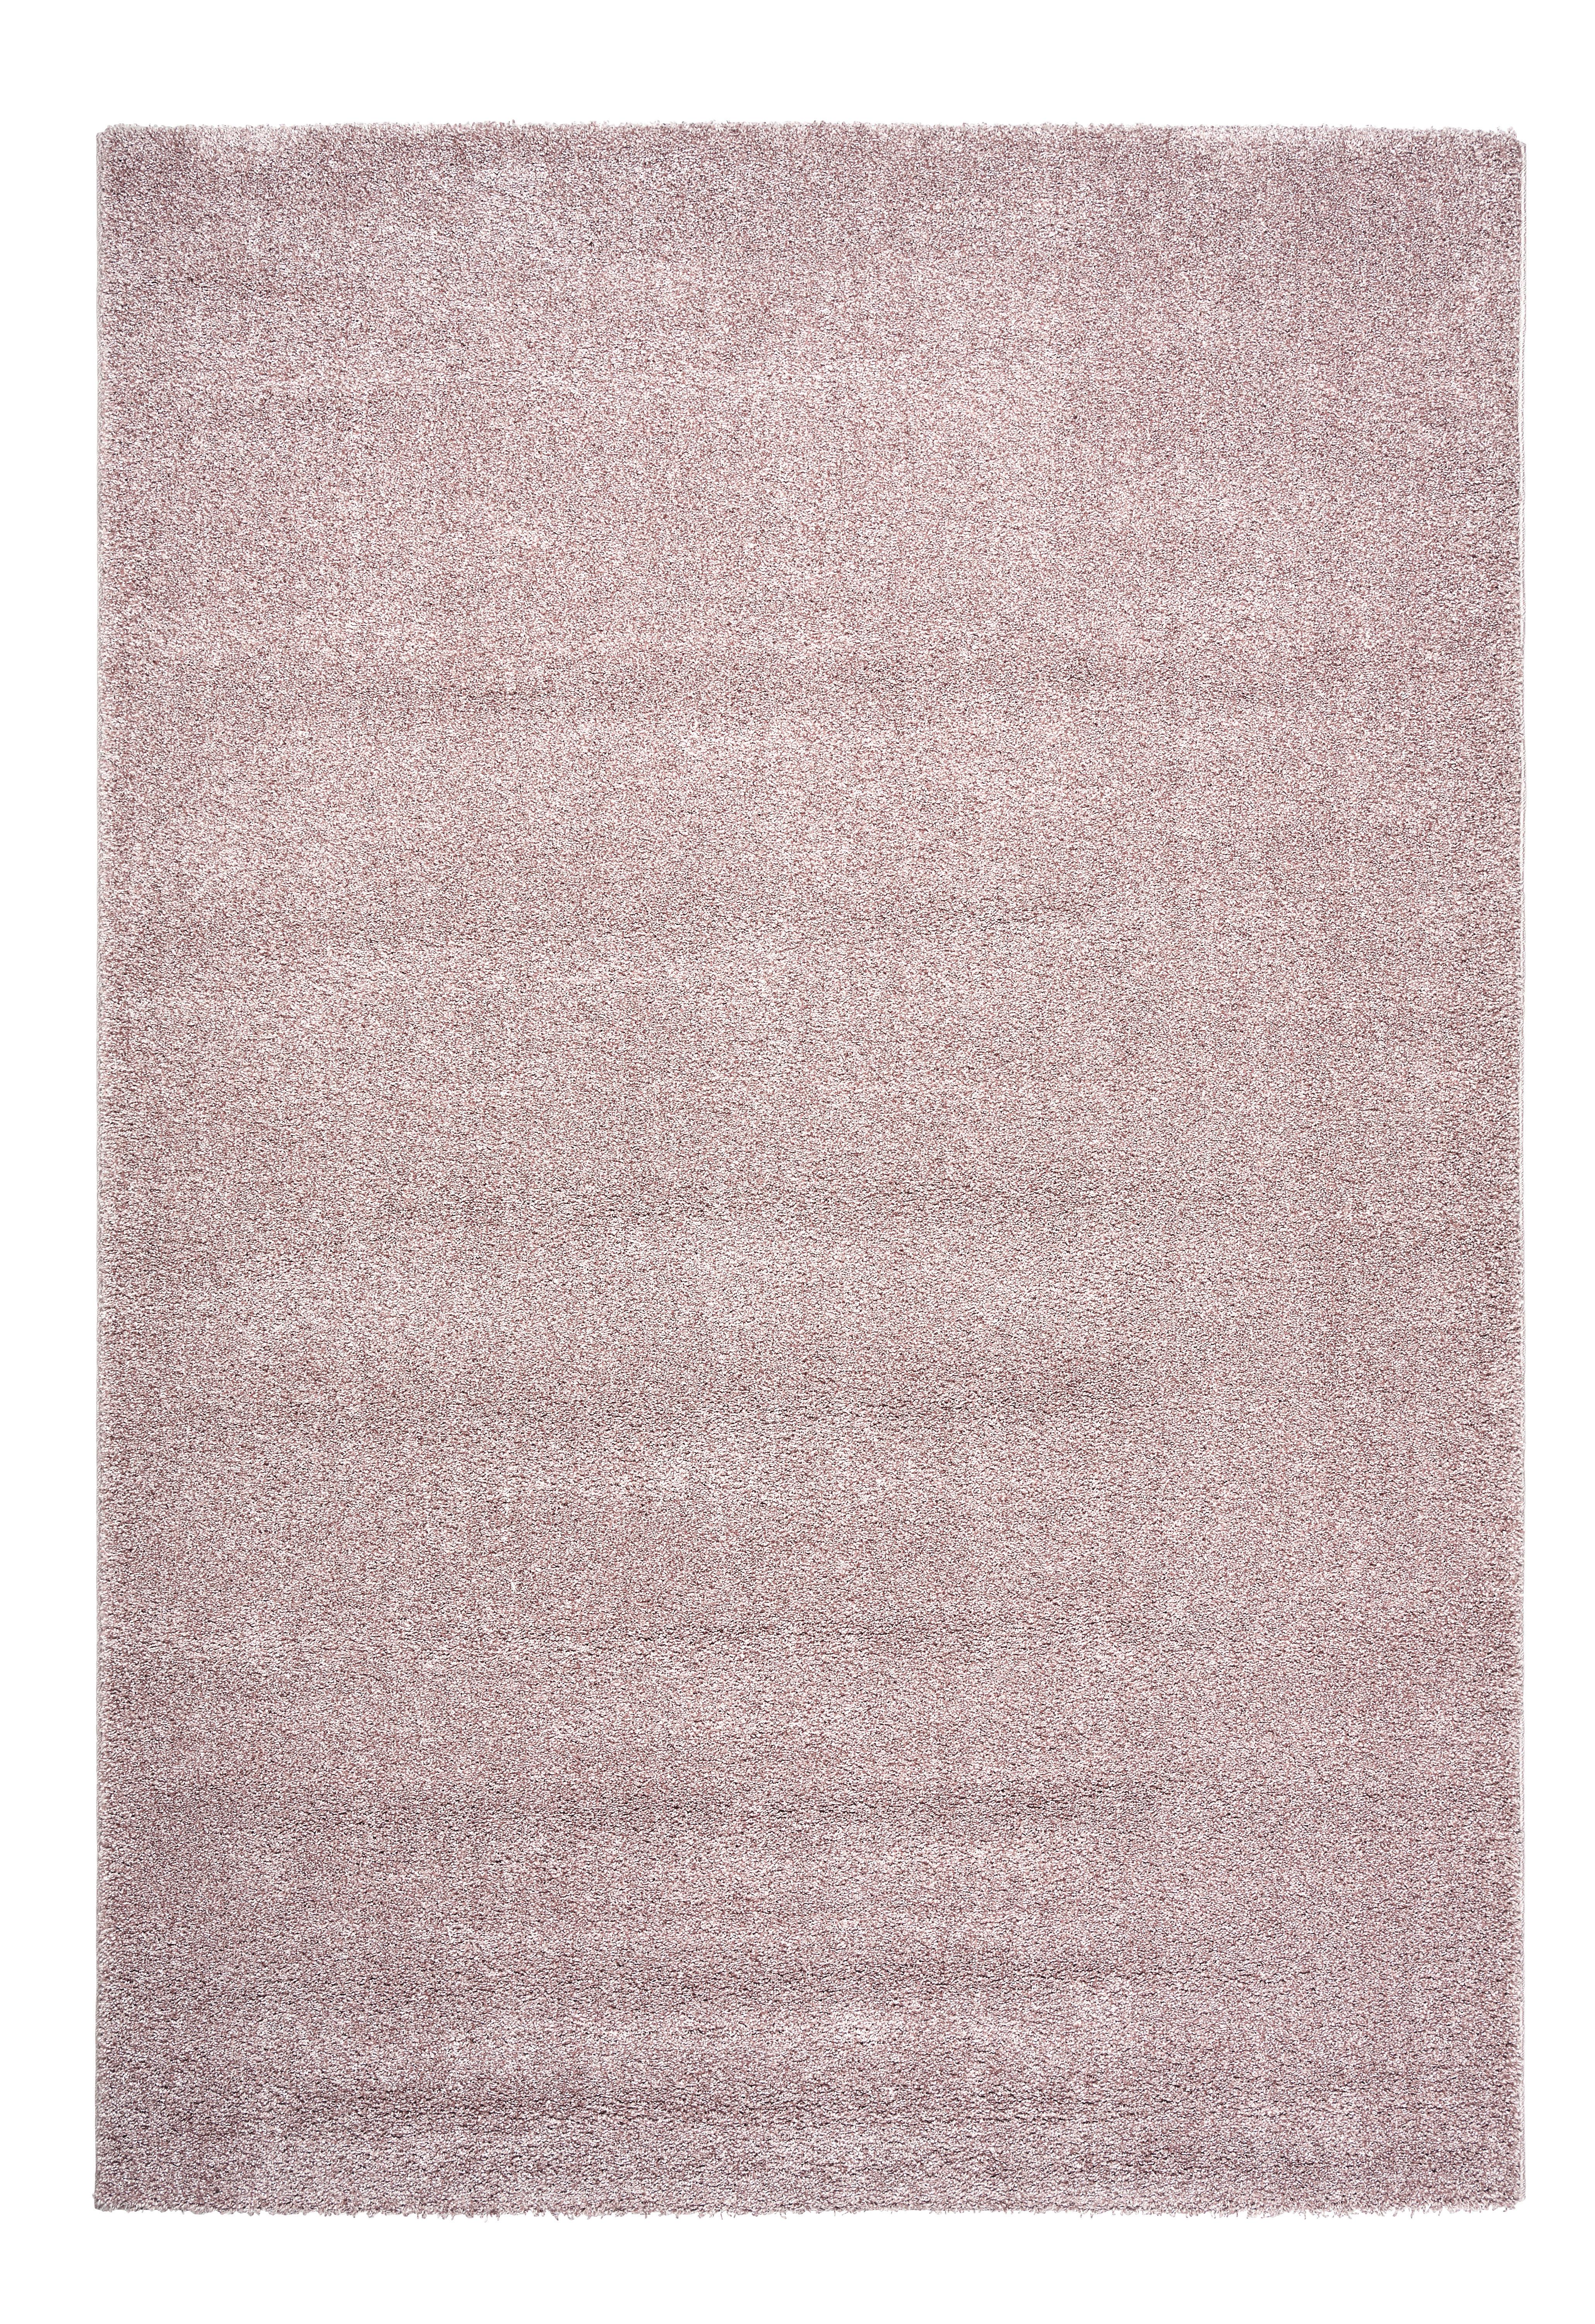 Tkaný Koberec Rubin 1, 80/150cm, Růžová - růžová, Romantický / Rustikální, plast (80/150cm) - Modern Living